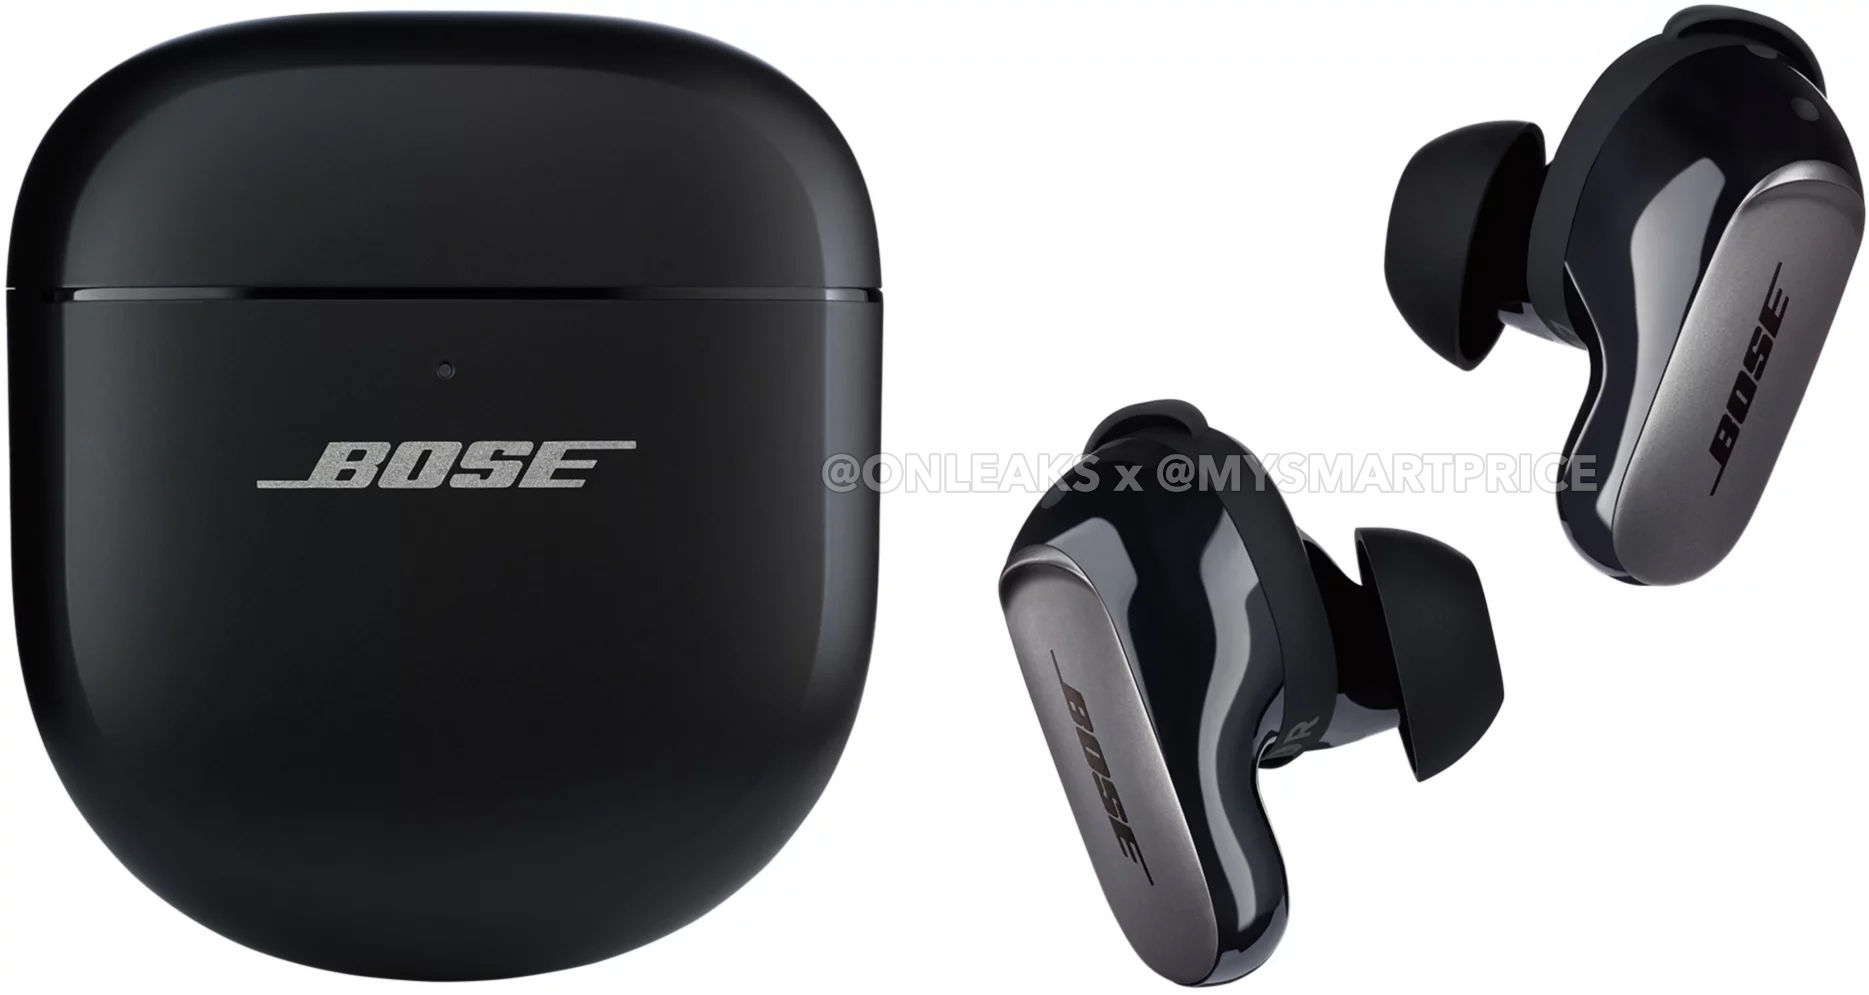 Les futurs casque et écouteurs de Bose profiteraient de l'audio